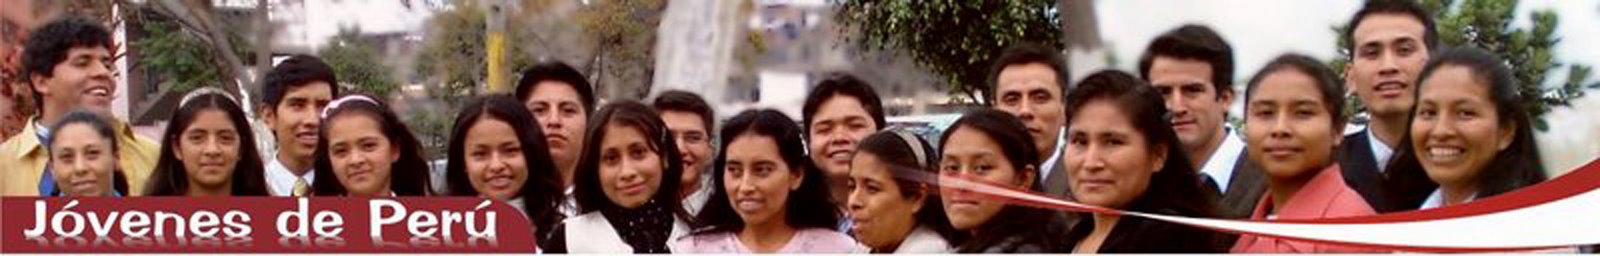 Jóvenes de Perú - Quienes somos?